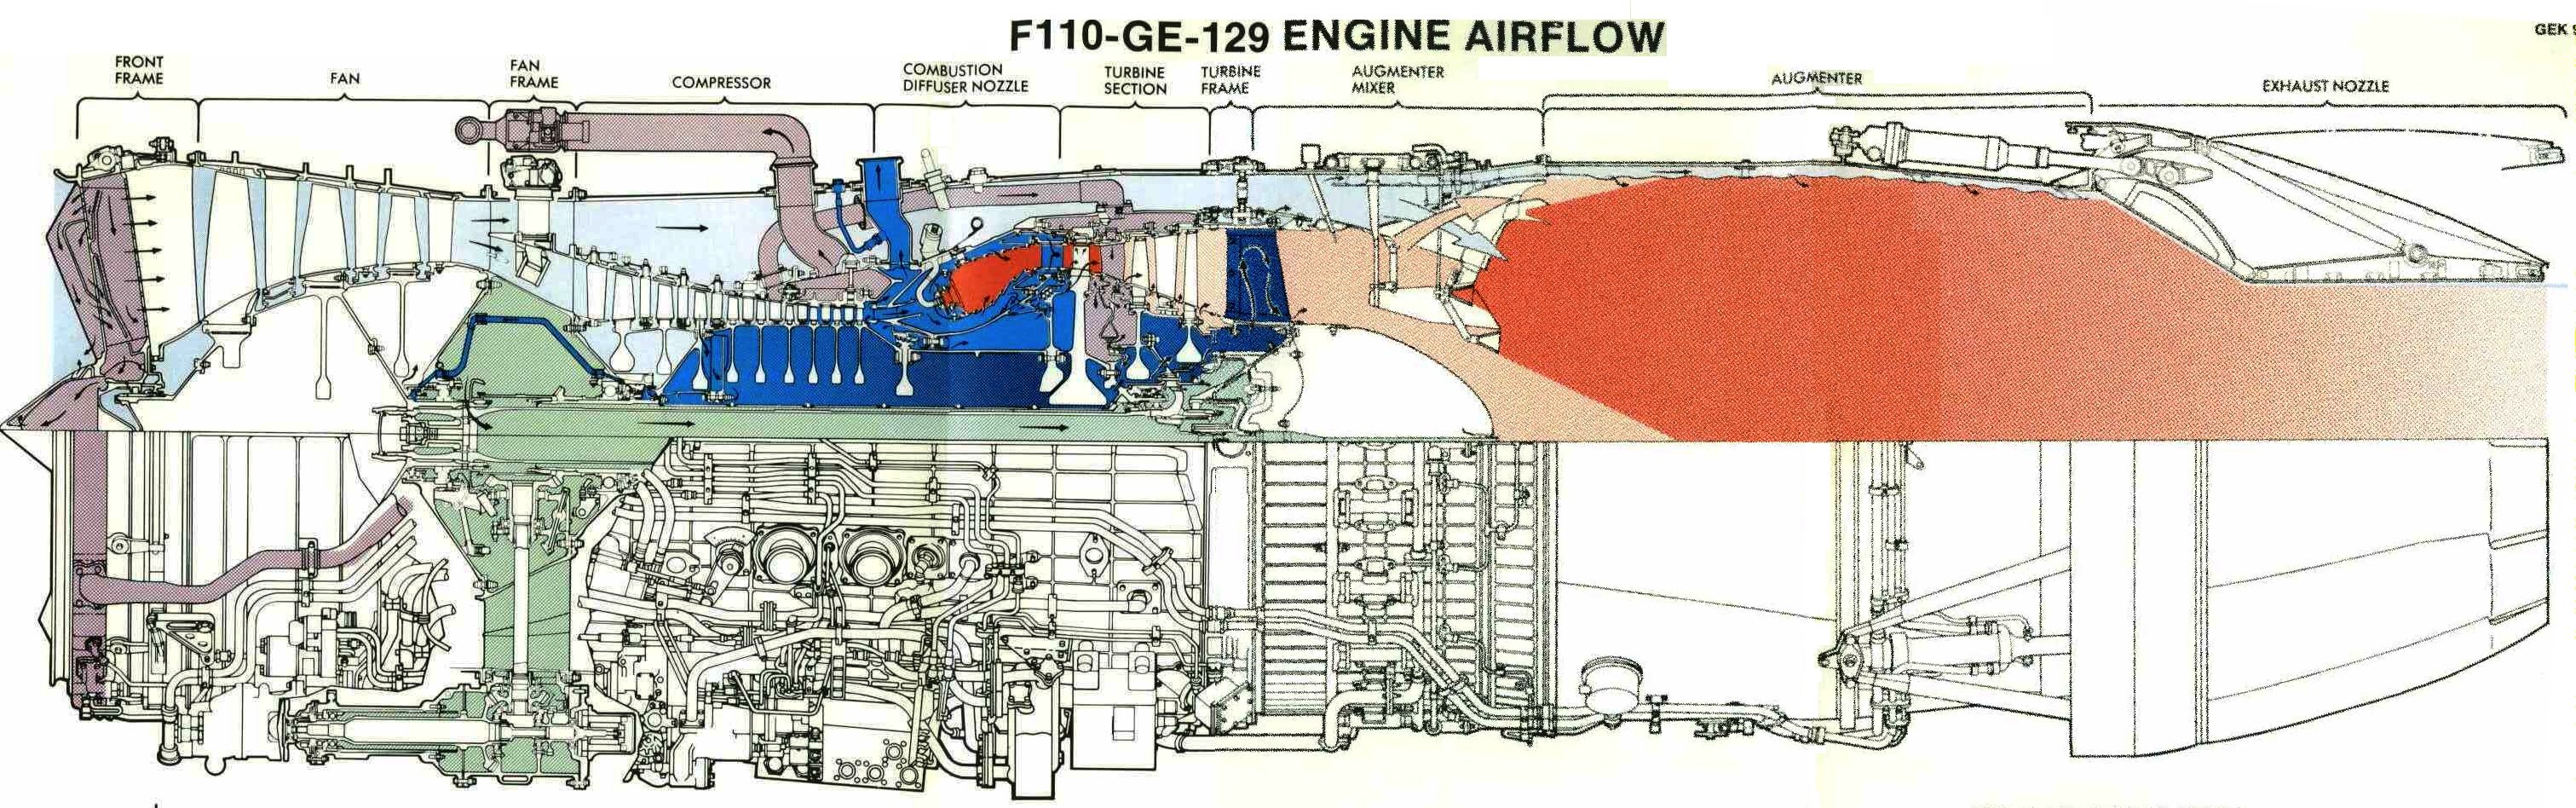 F110-GE-129 engine Схема охлаждения деталей, наддува лабиринтов и разгрузочных полостей